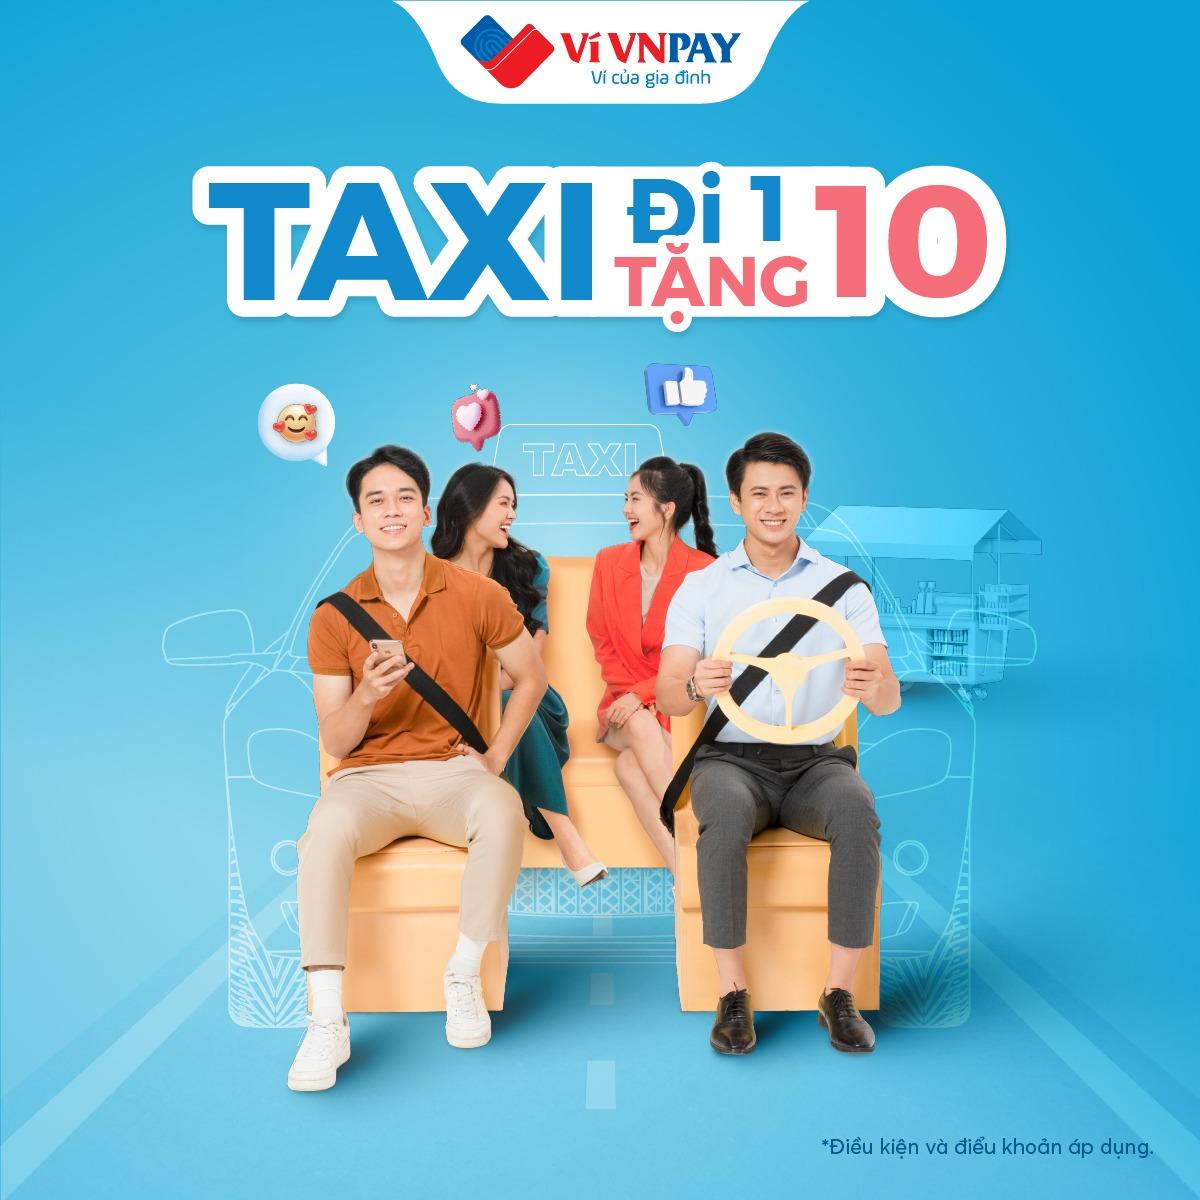 Gọi taxi trên ví VNPAY, đi 1 tặng 10 ưu đãi tới 300.000 đồng